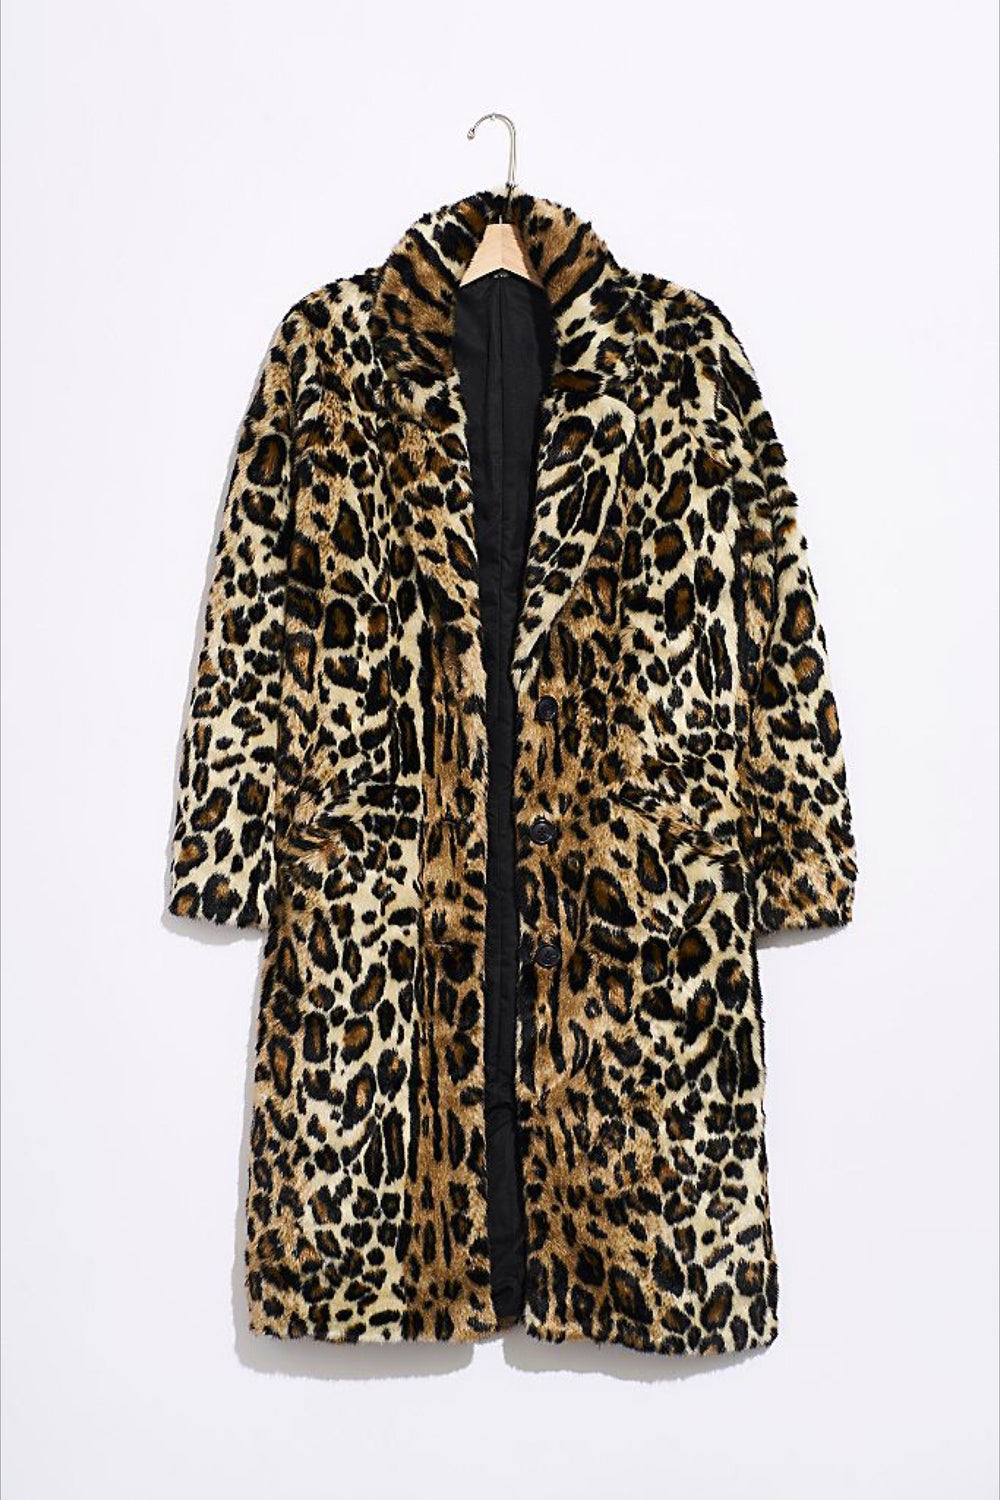 Leopard Chloe Jacket